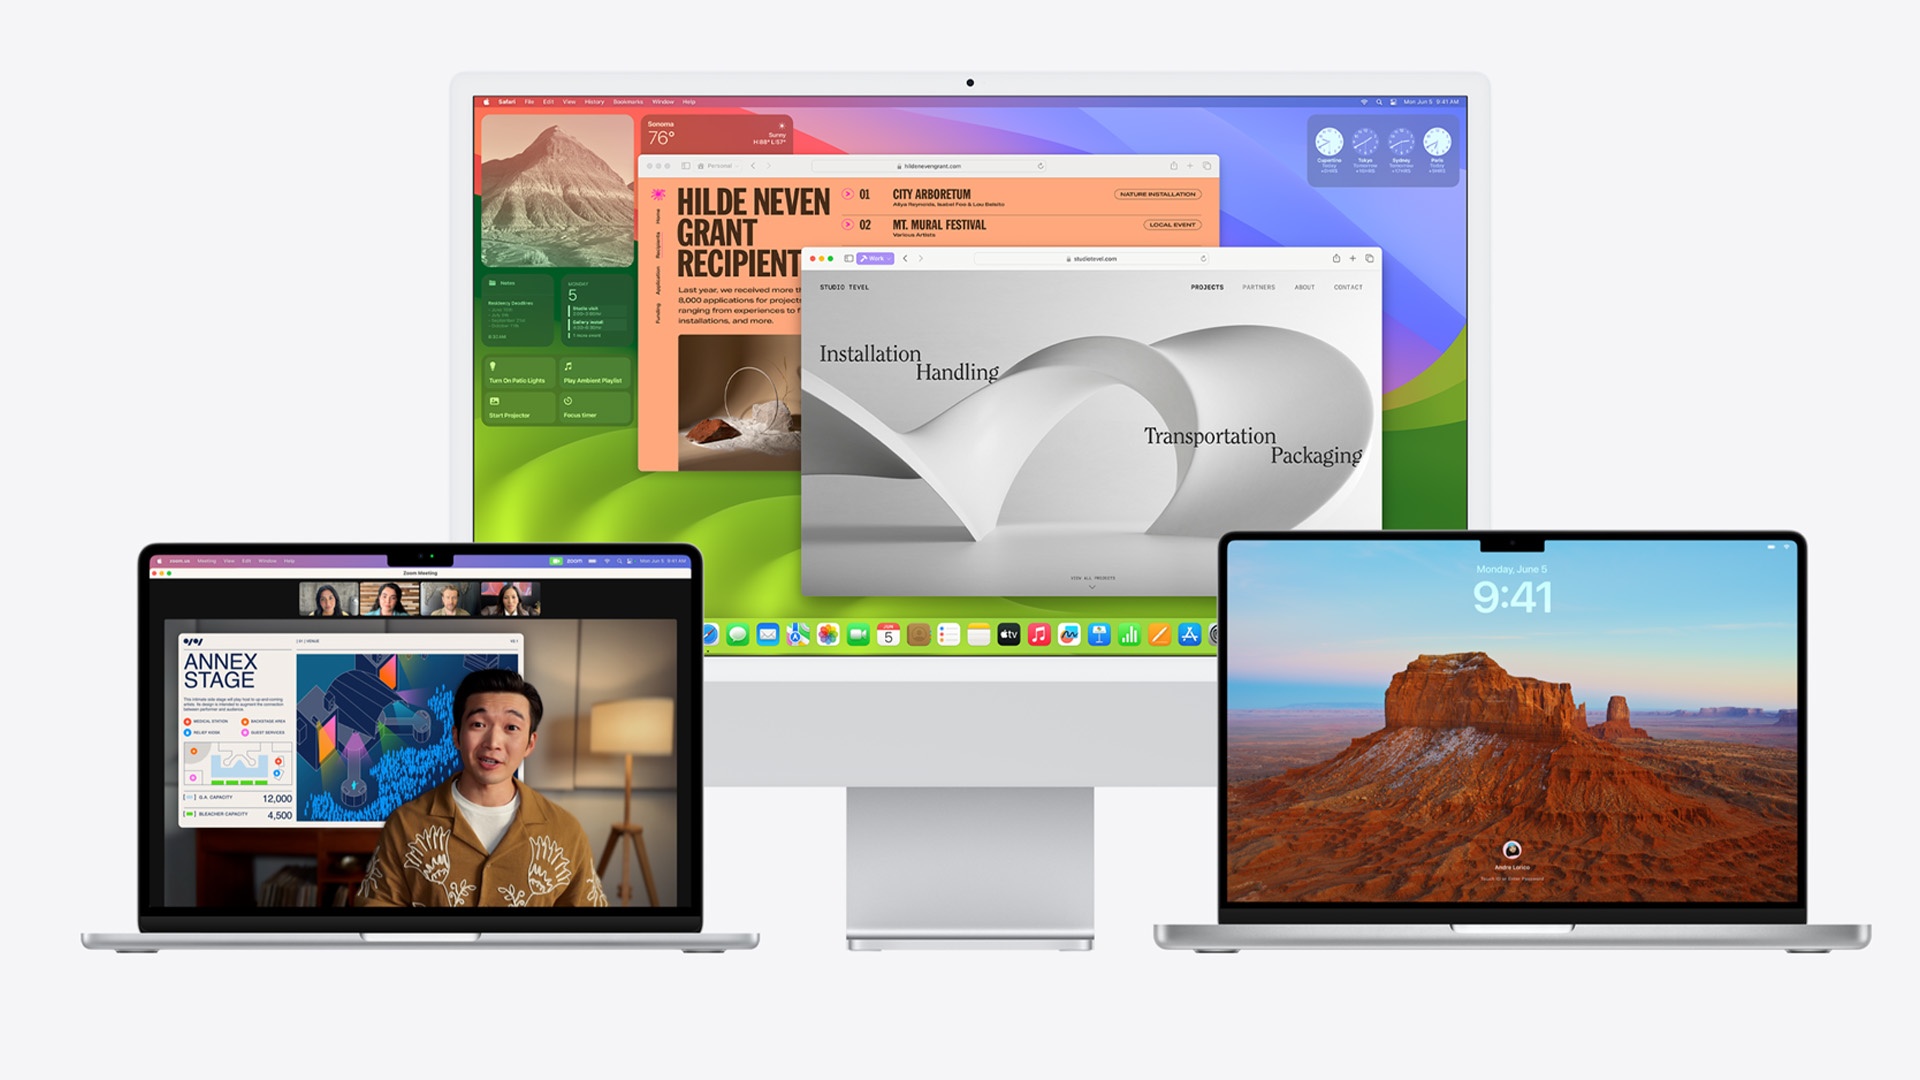 #Das große Mac-Update erscheint heute: Alles was ihr über macOS Senoma wissen müsst